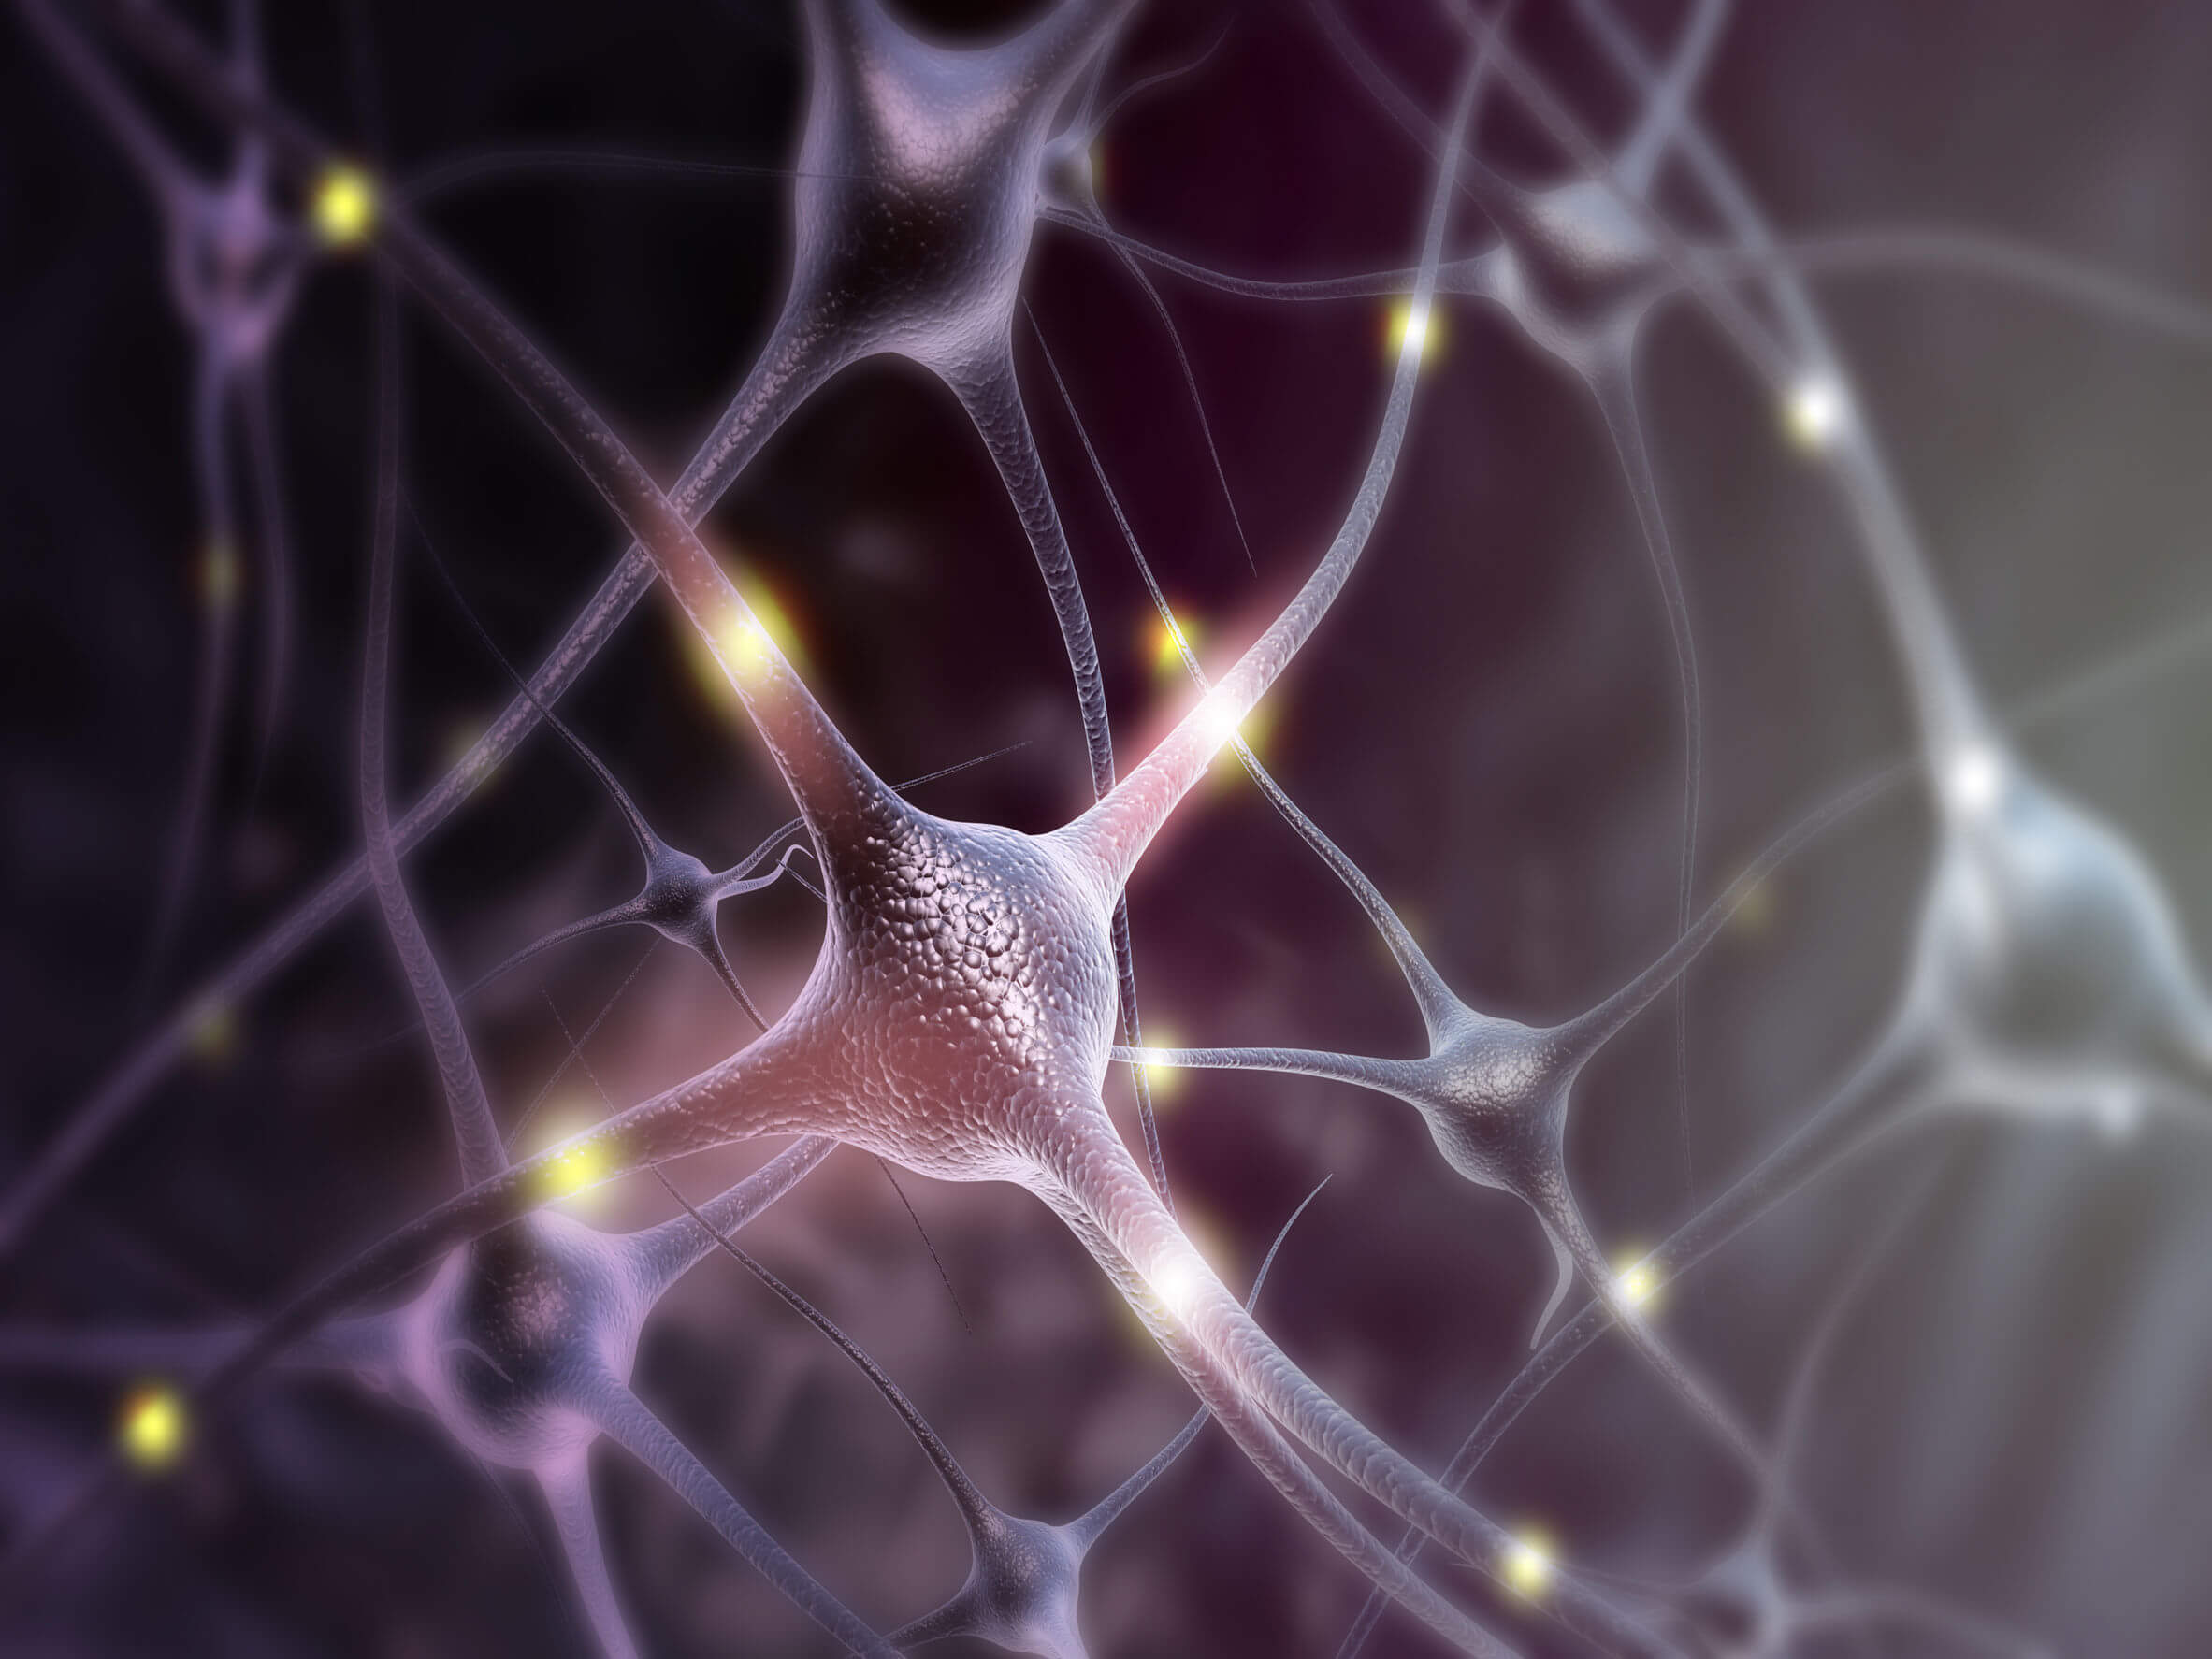 O fator neurotrófico pode influenciar a atividade dos neurônios.